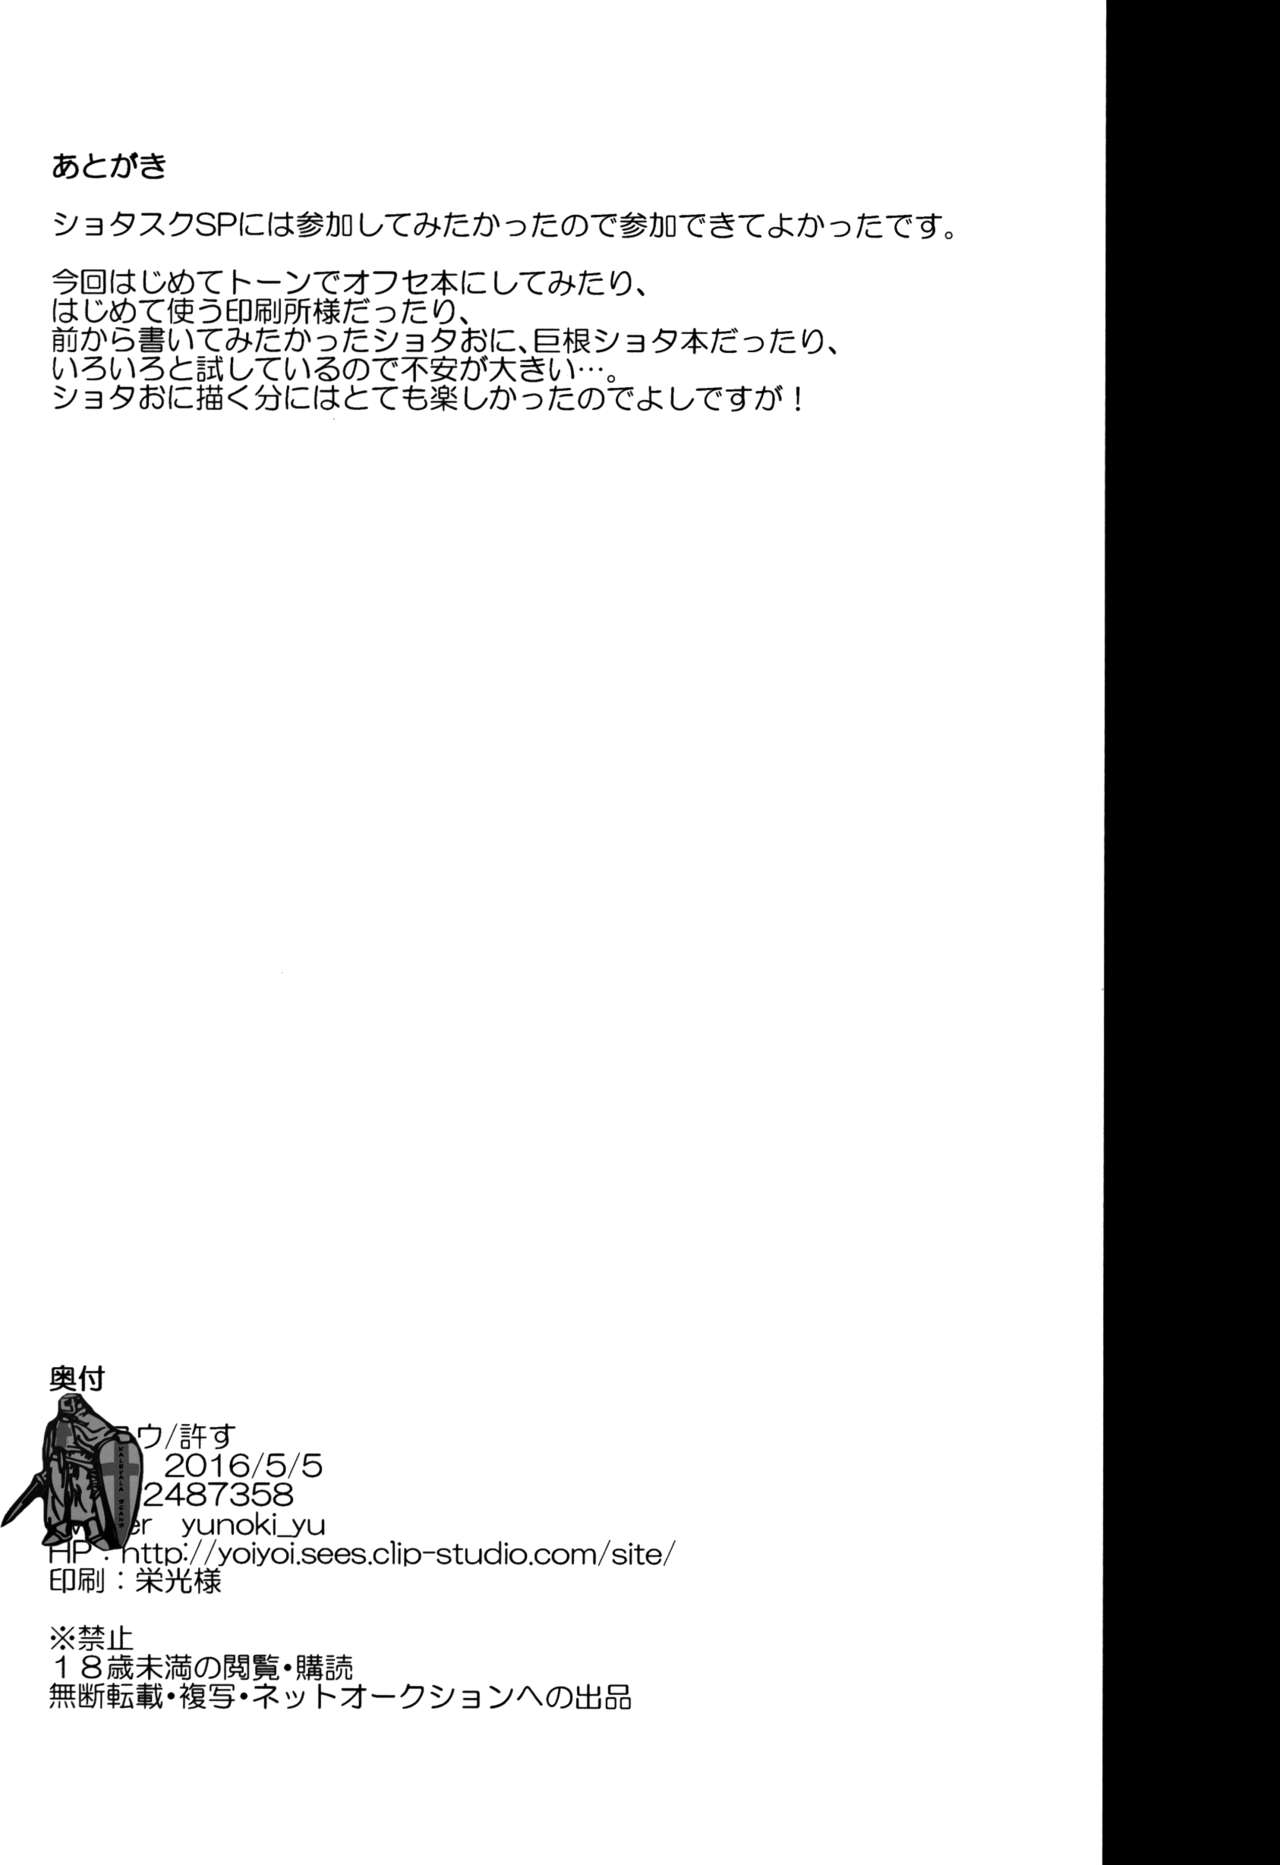 Read Shota Scratch Sp Yurusu Yunoki Yu Shota Oni English